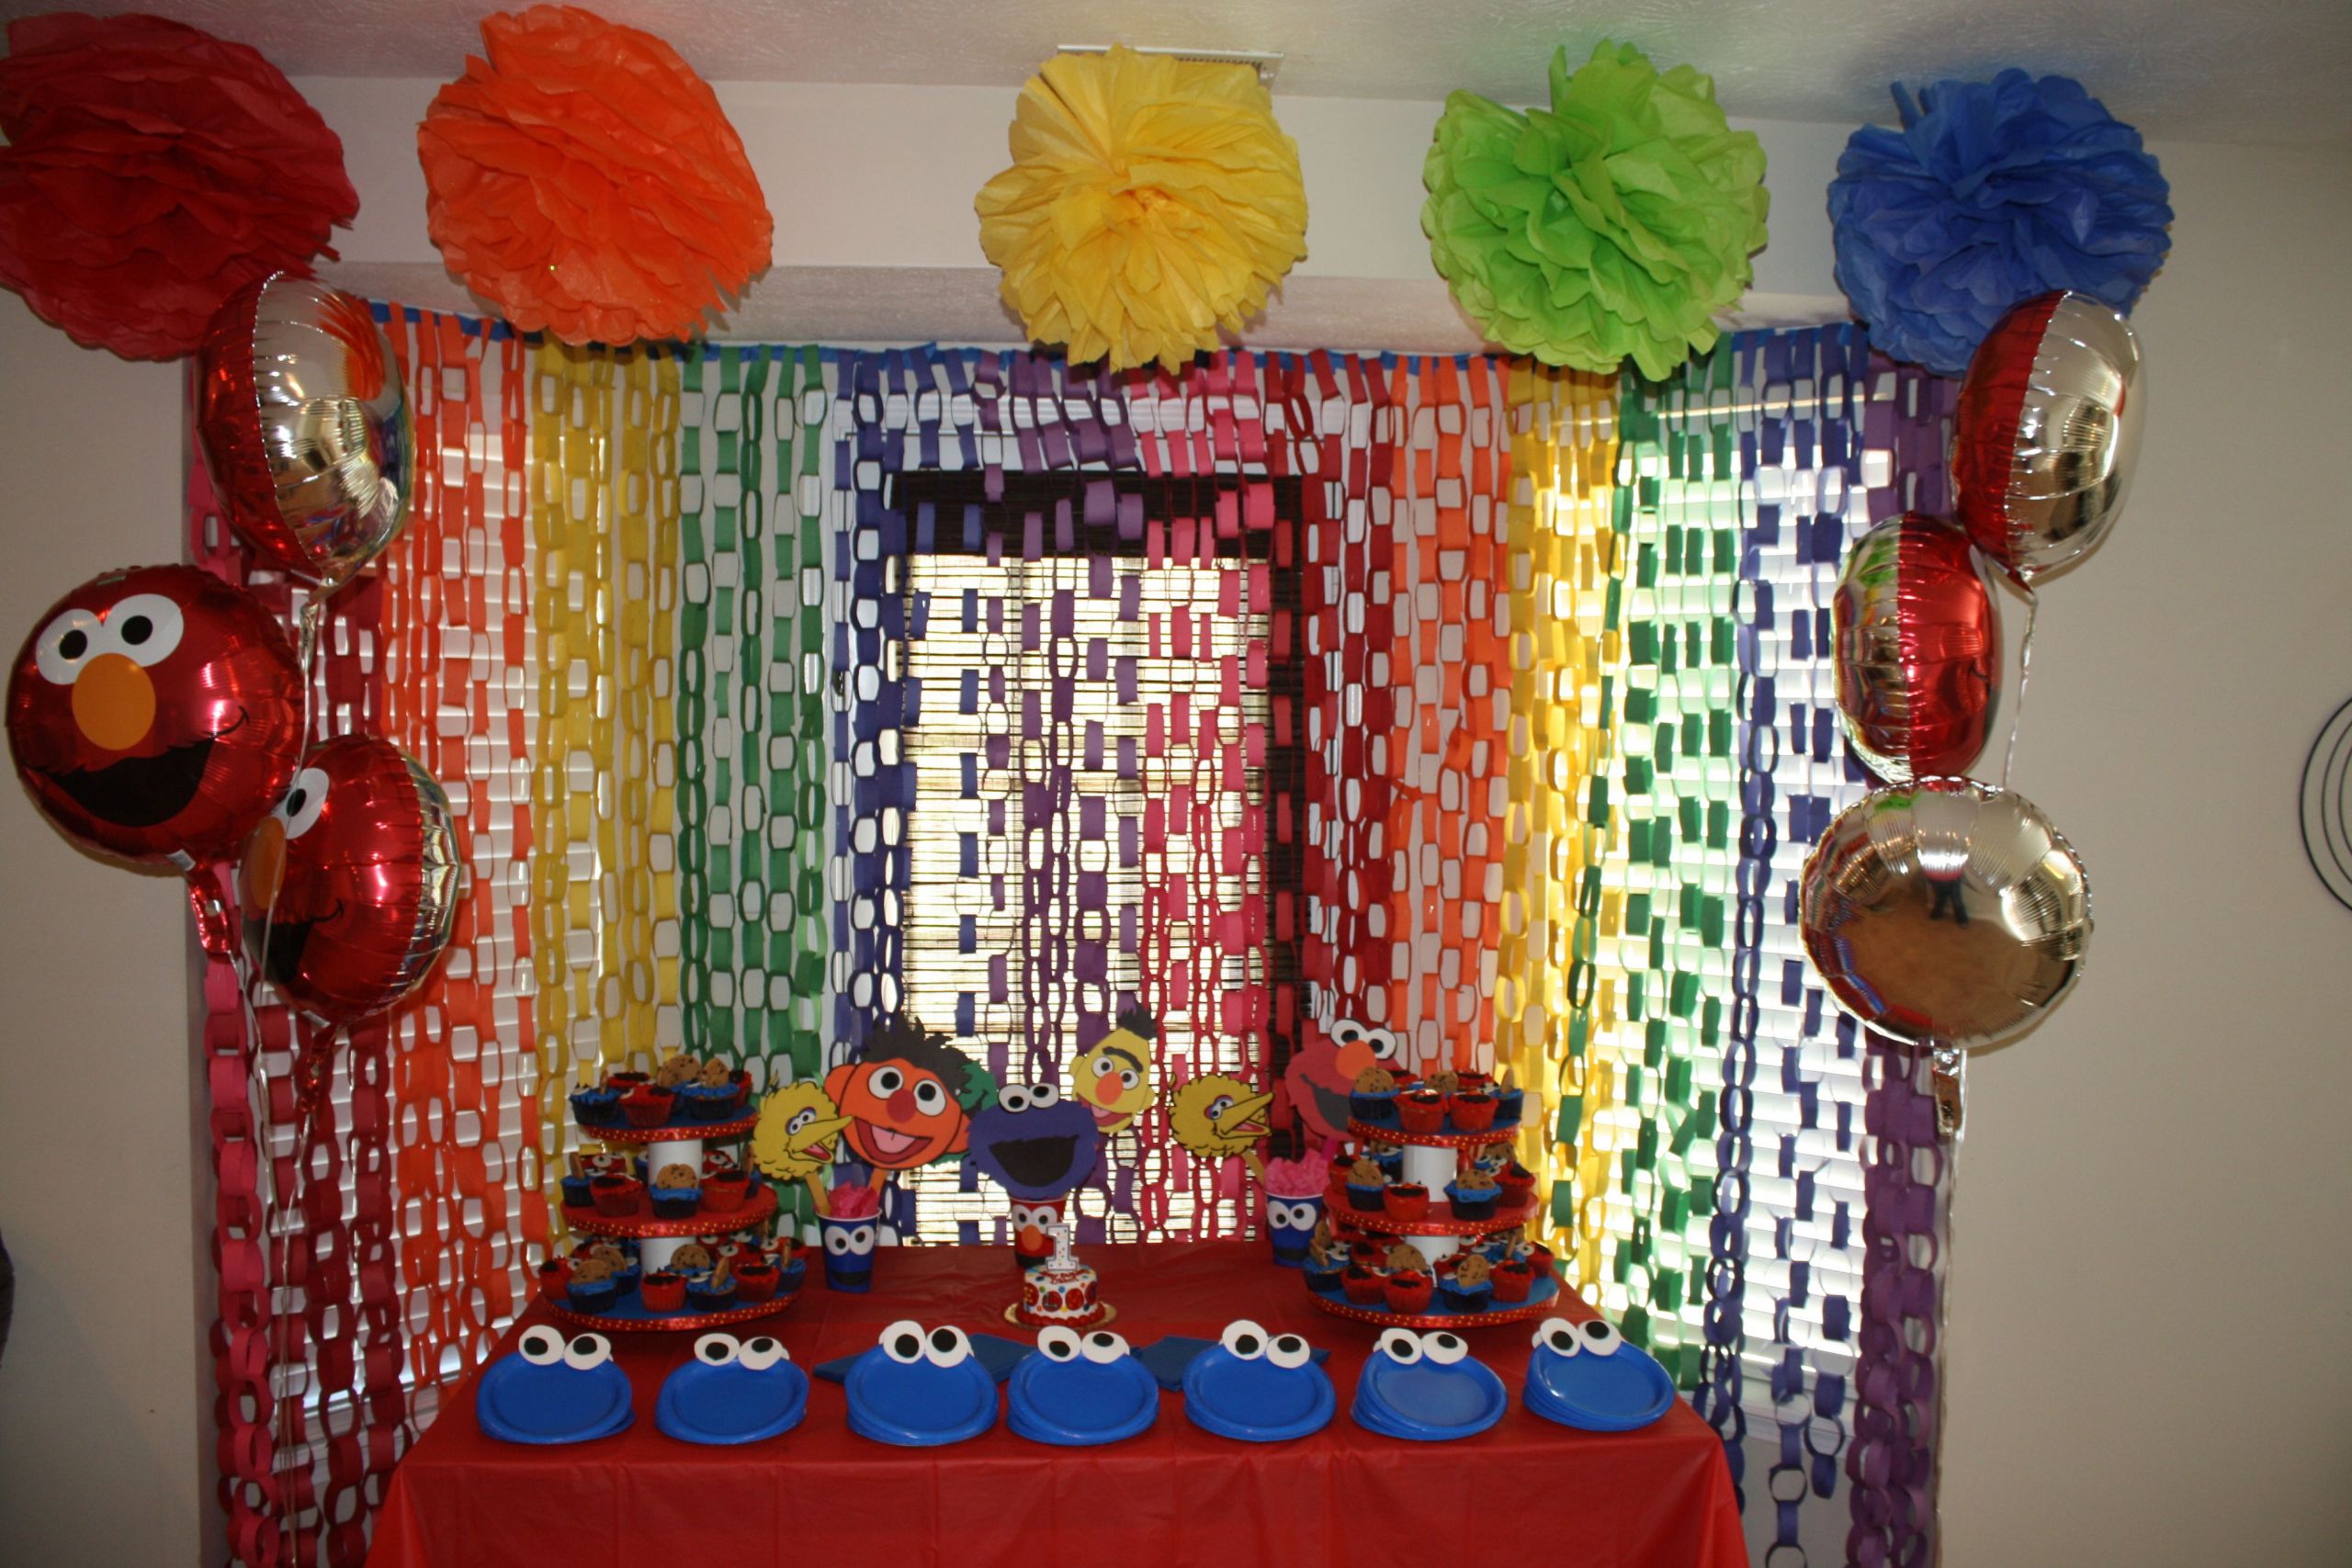 DIY Elmo Decorations
 Home made decorations for an Elmo Sesame Street themed